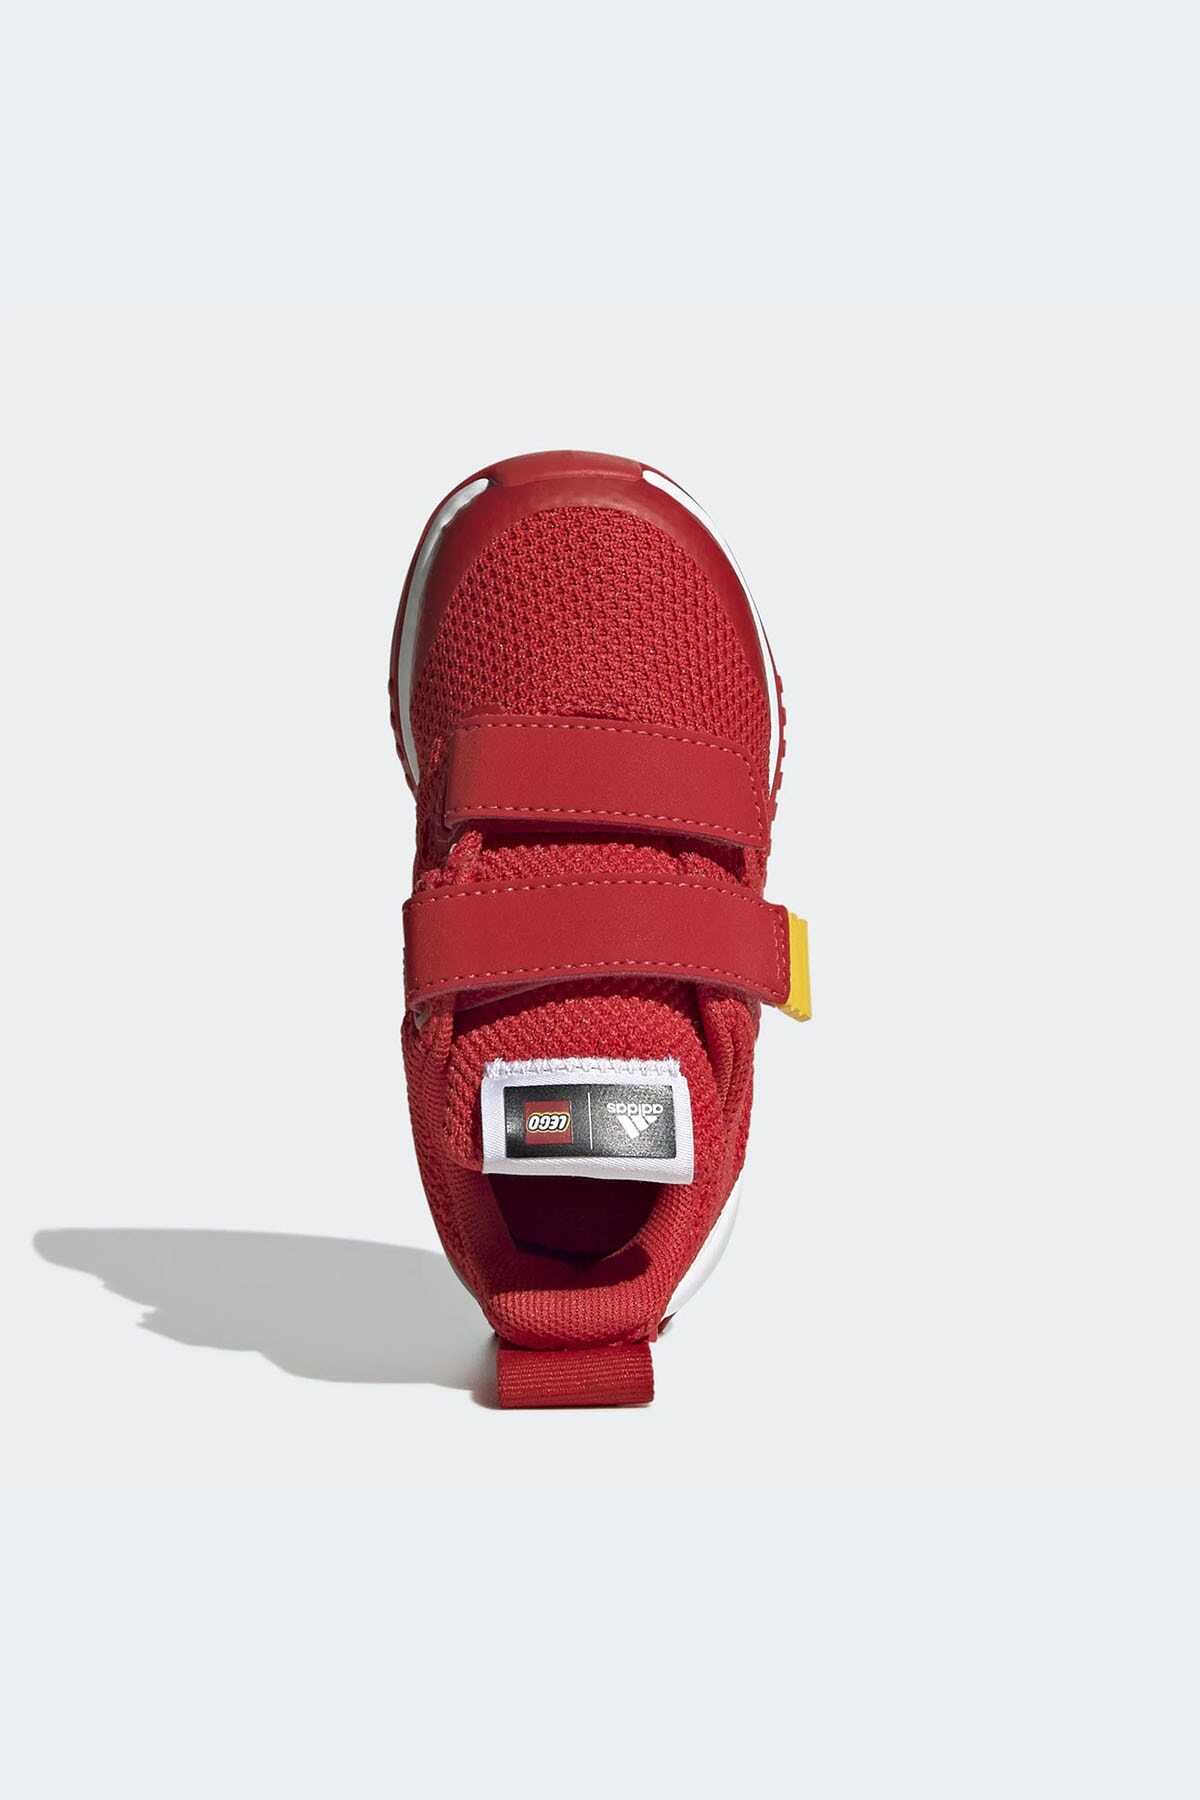 کتانی ورزشی بچه گانه مدل Gw8093 قرمز برند adidas